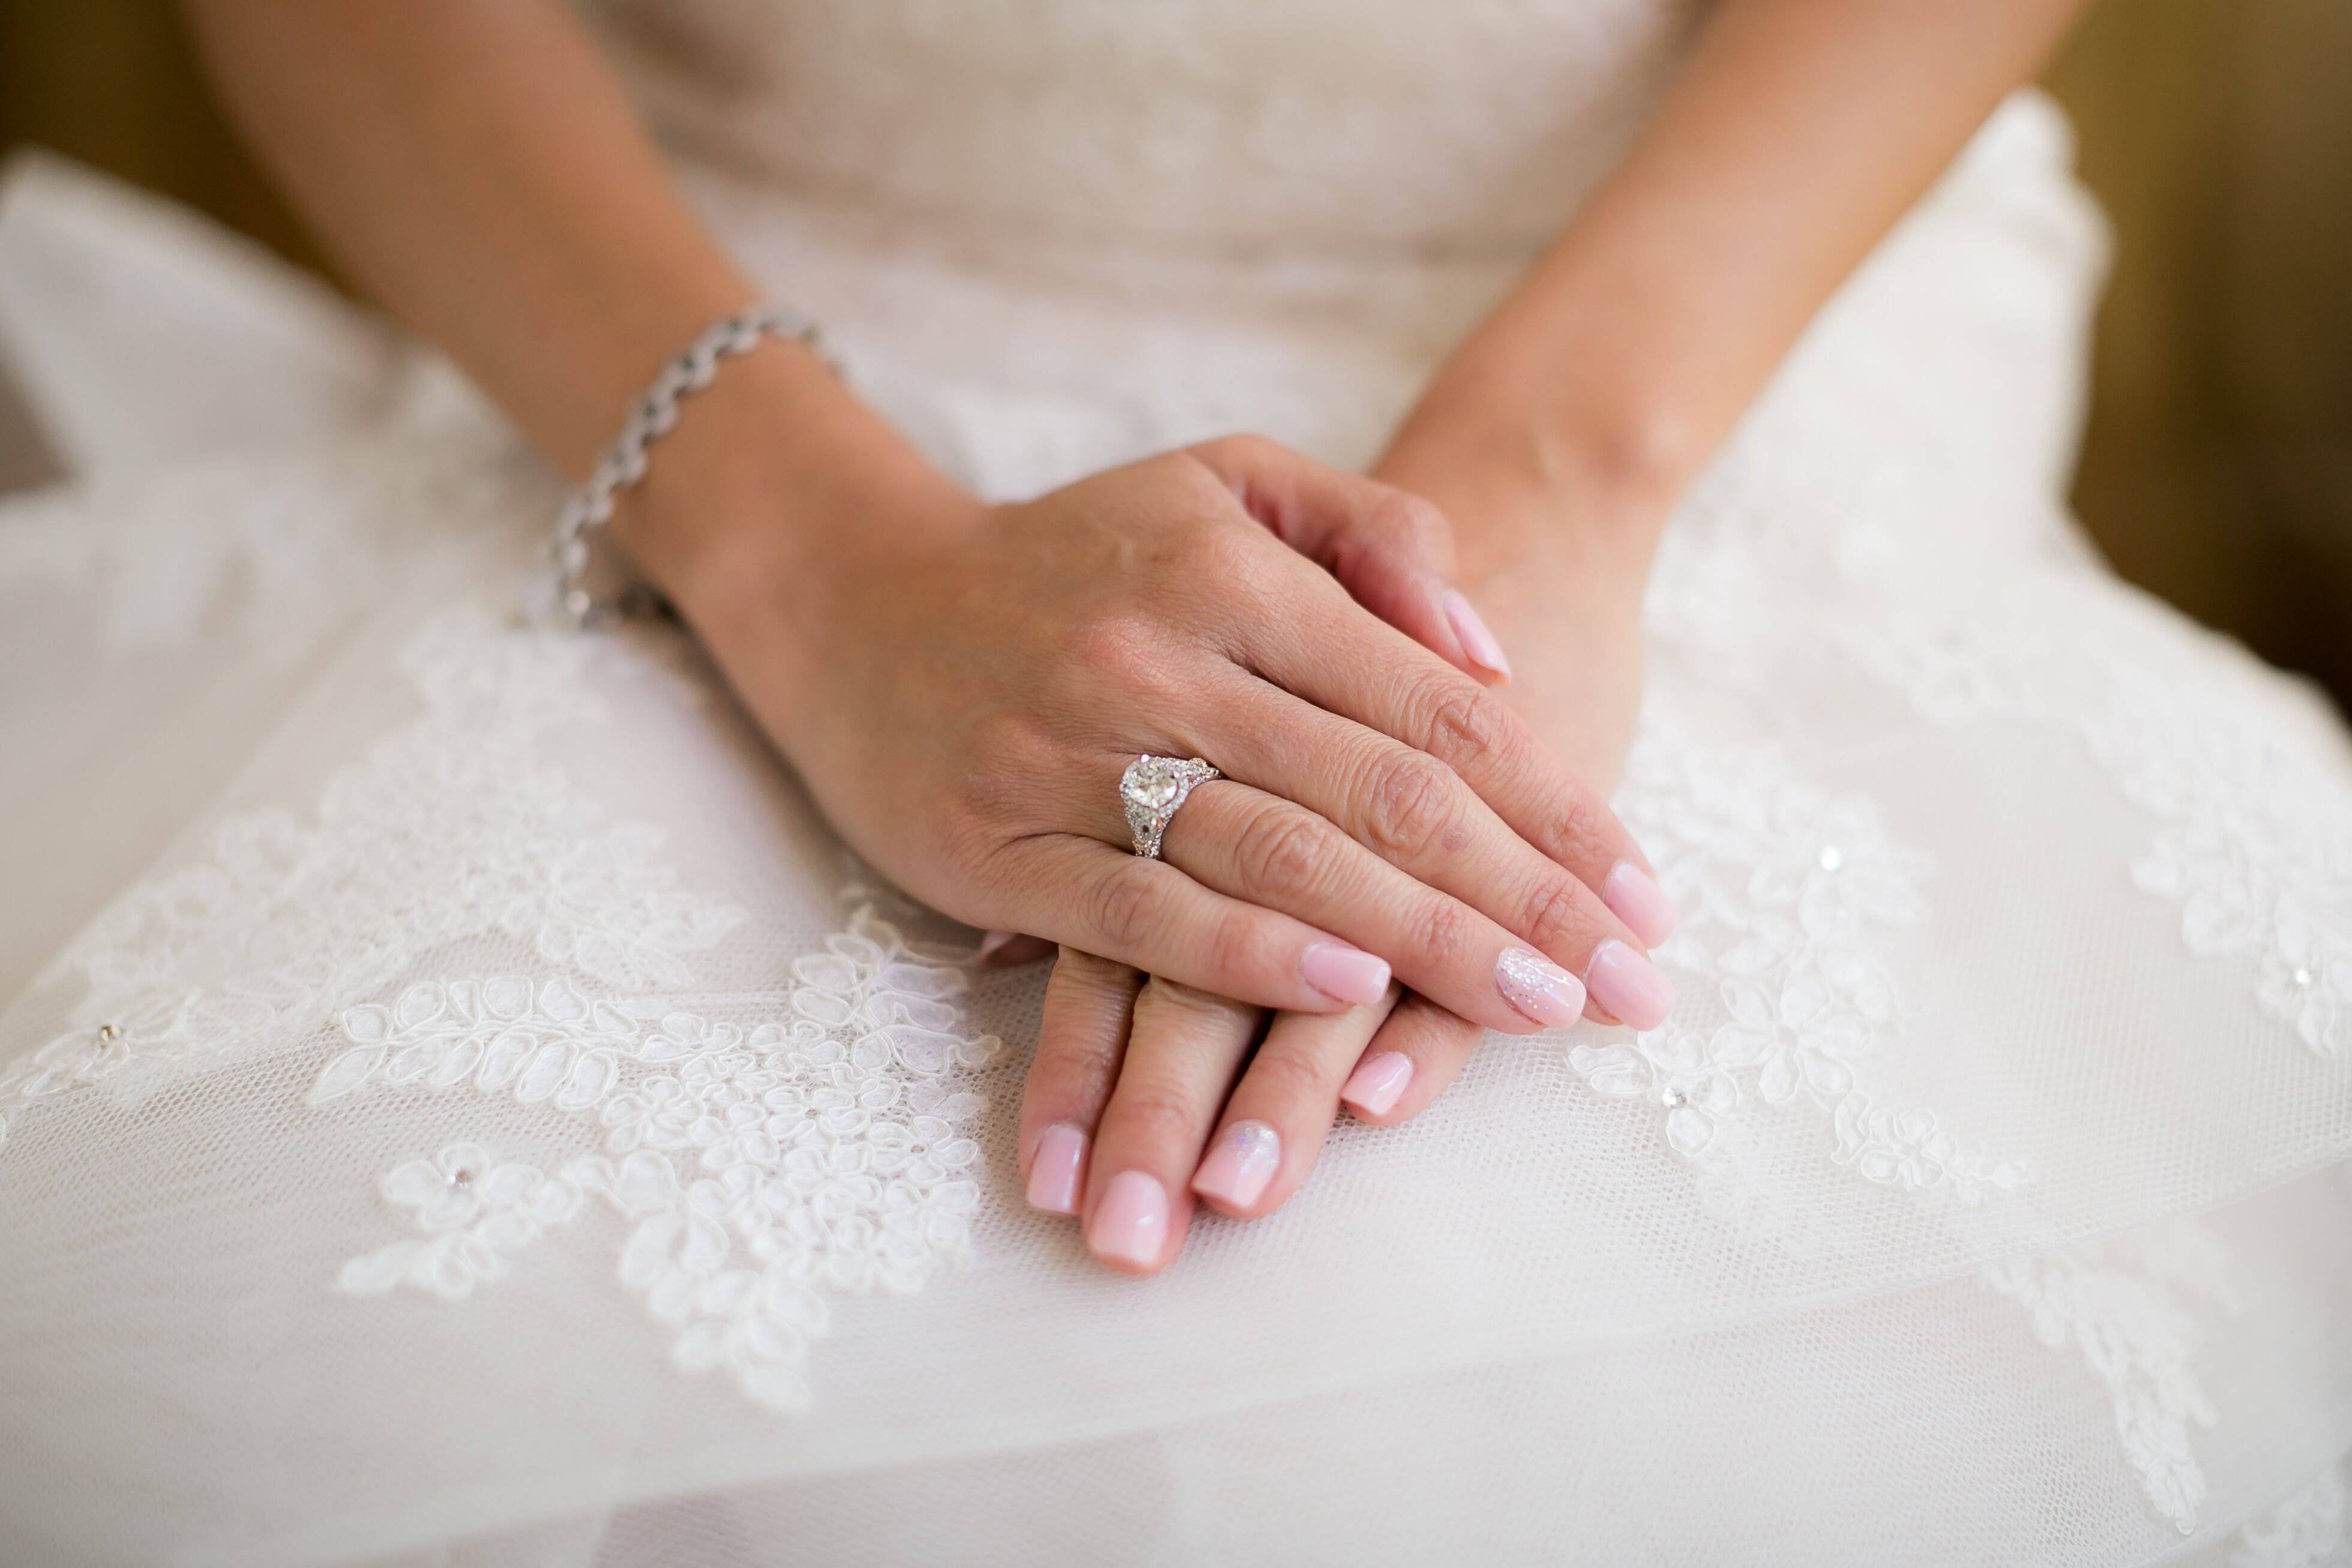 Маникюр свадебный 2021 для невесты: фото, идеи, модные тенденции